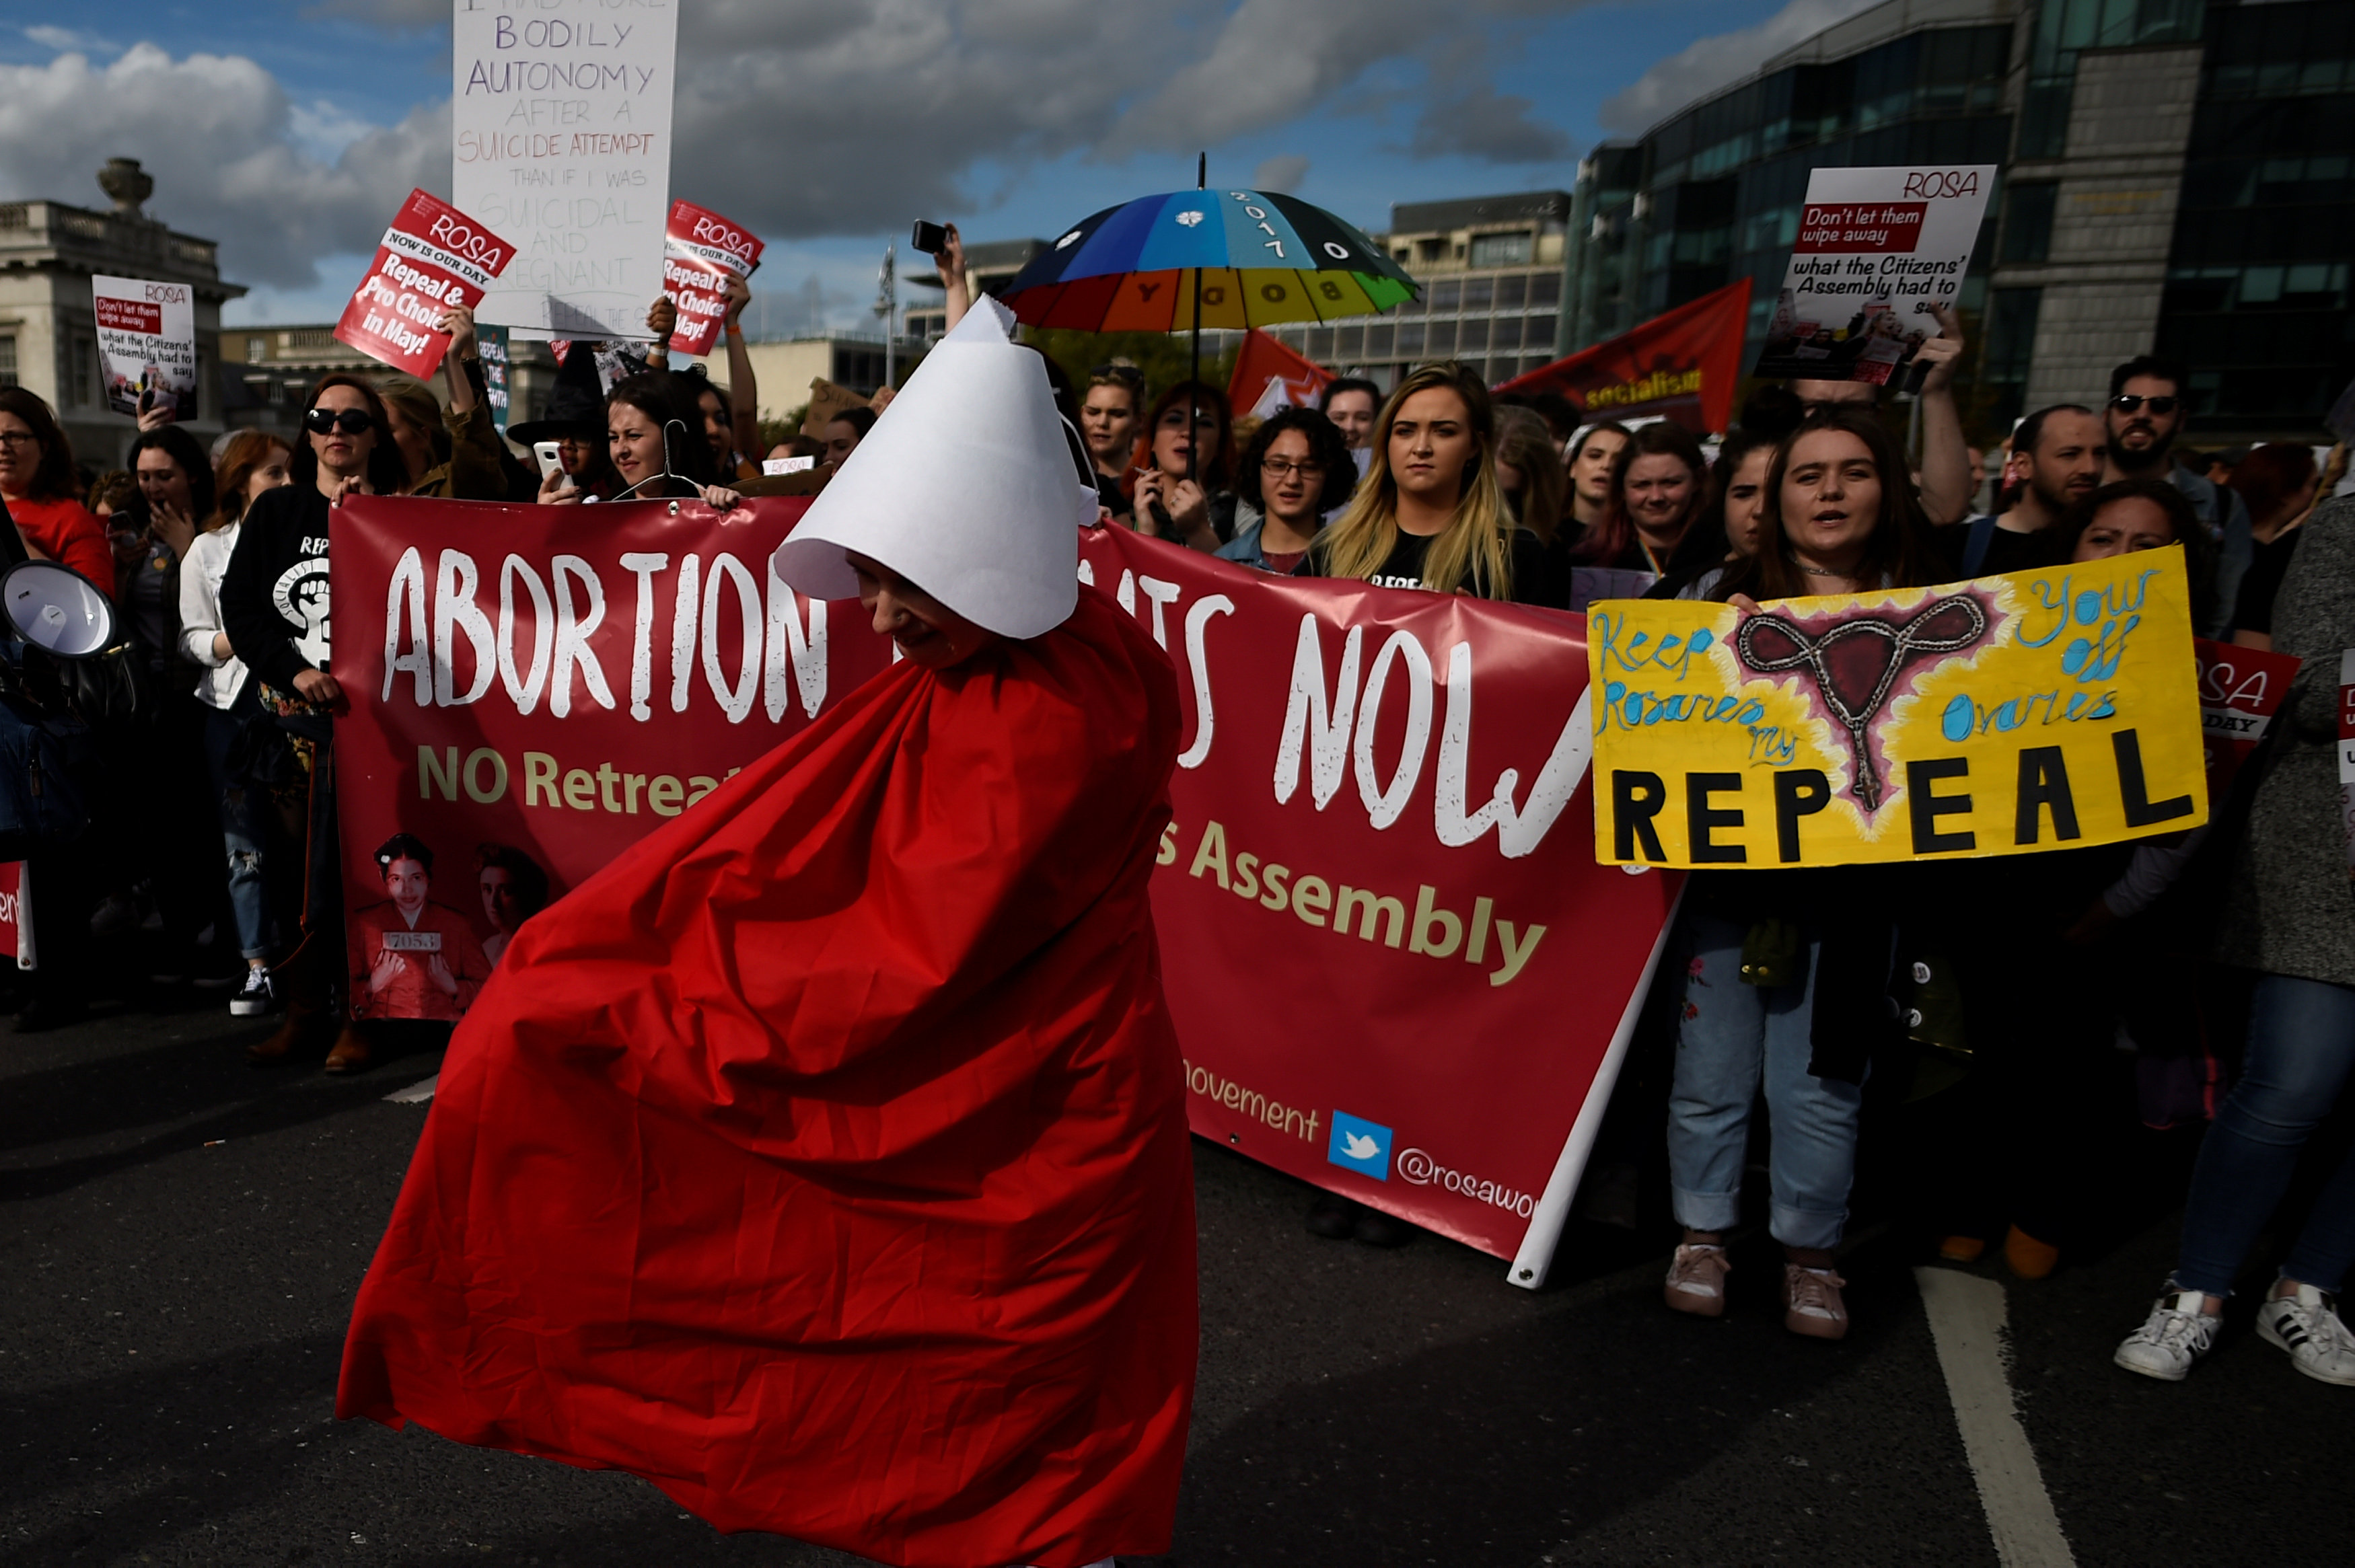 تظاهرت فى أيرلندا للمطالبة بتخفيف القيود على الإجهاض